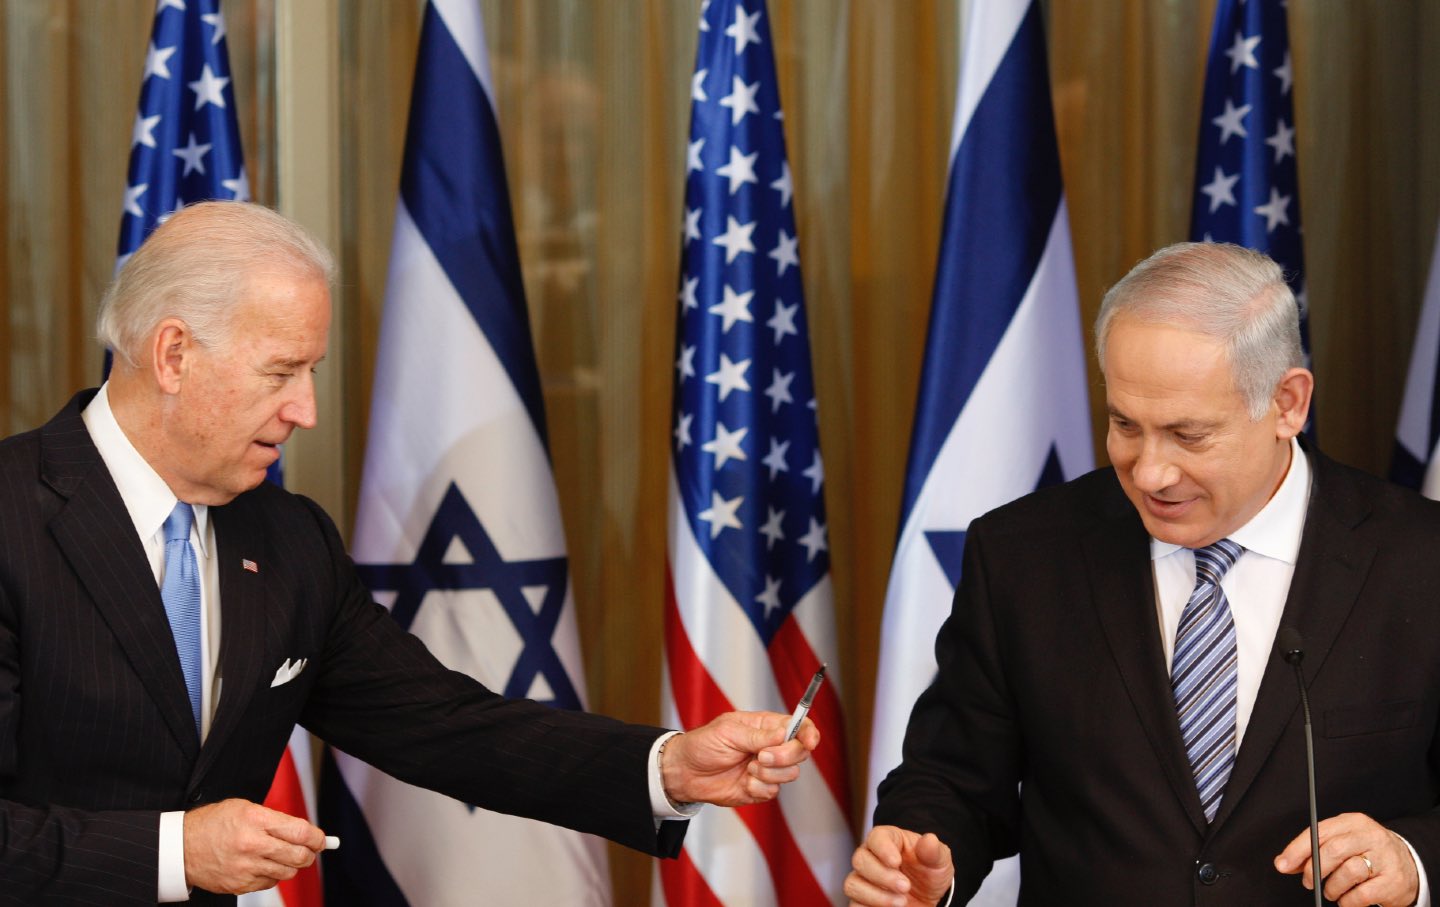 Biden gibt Netanjahu einen Stift.  Im Hintergrund sind die Flaggen der USA und Israels zu sehen